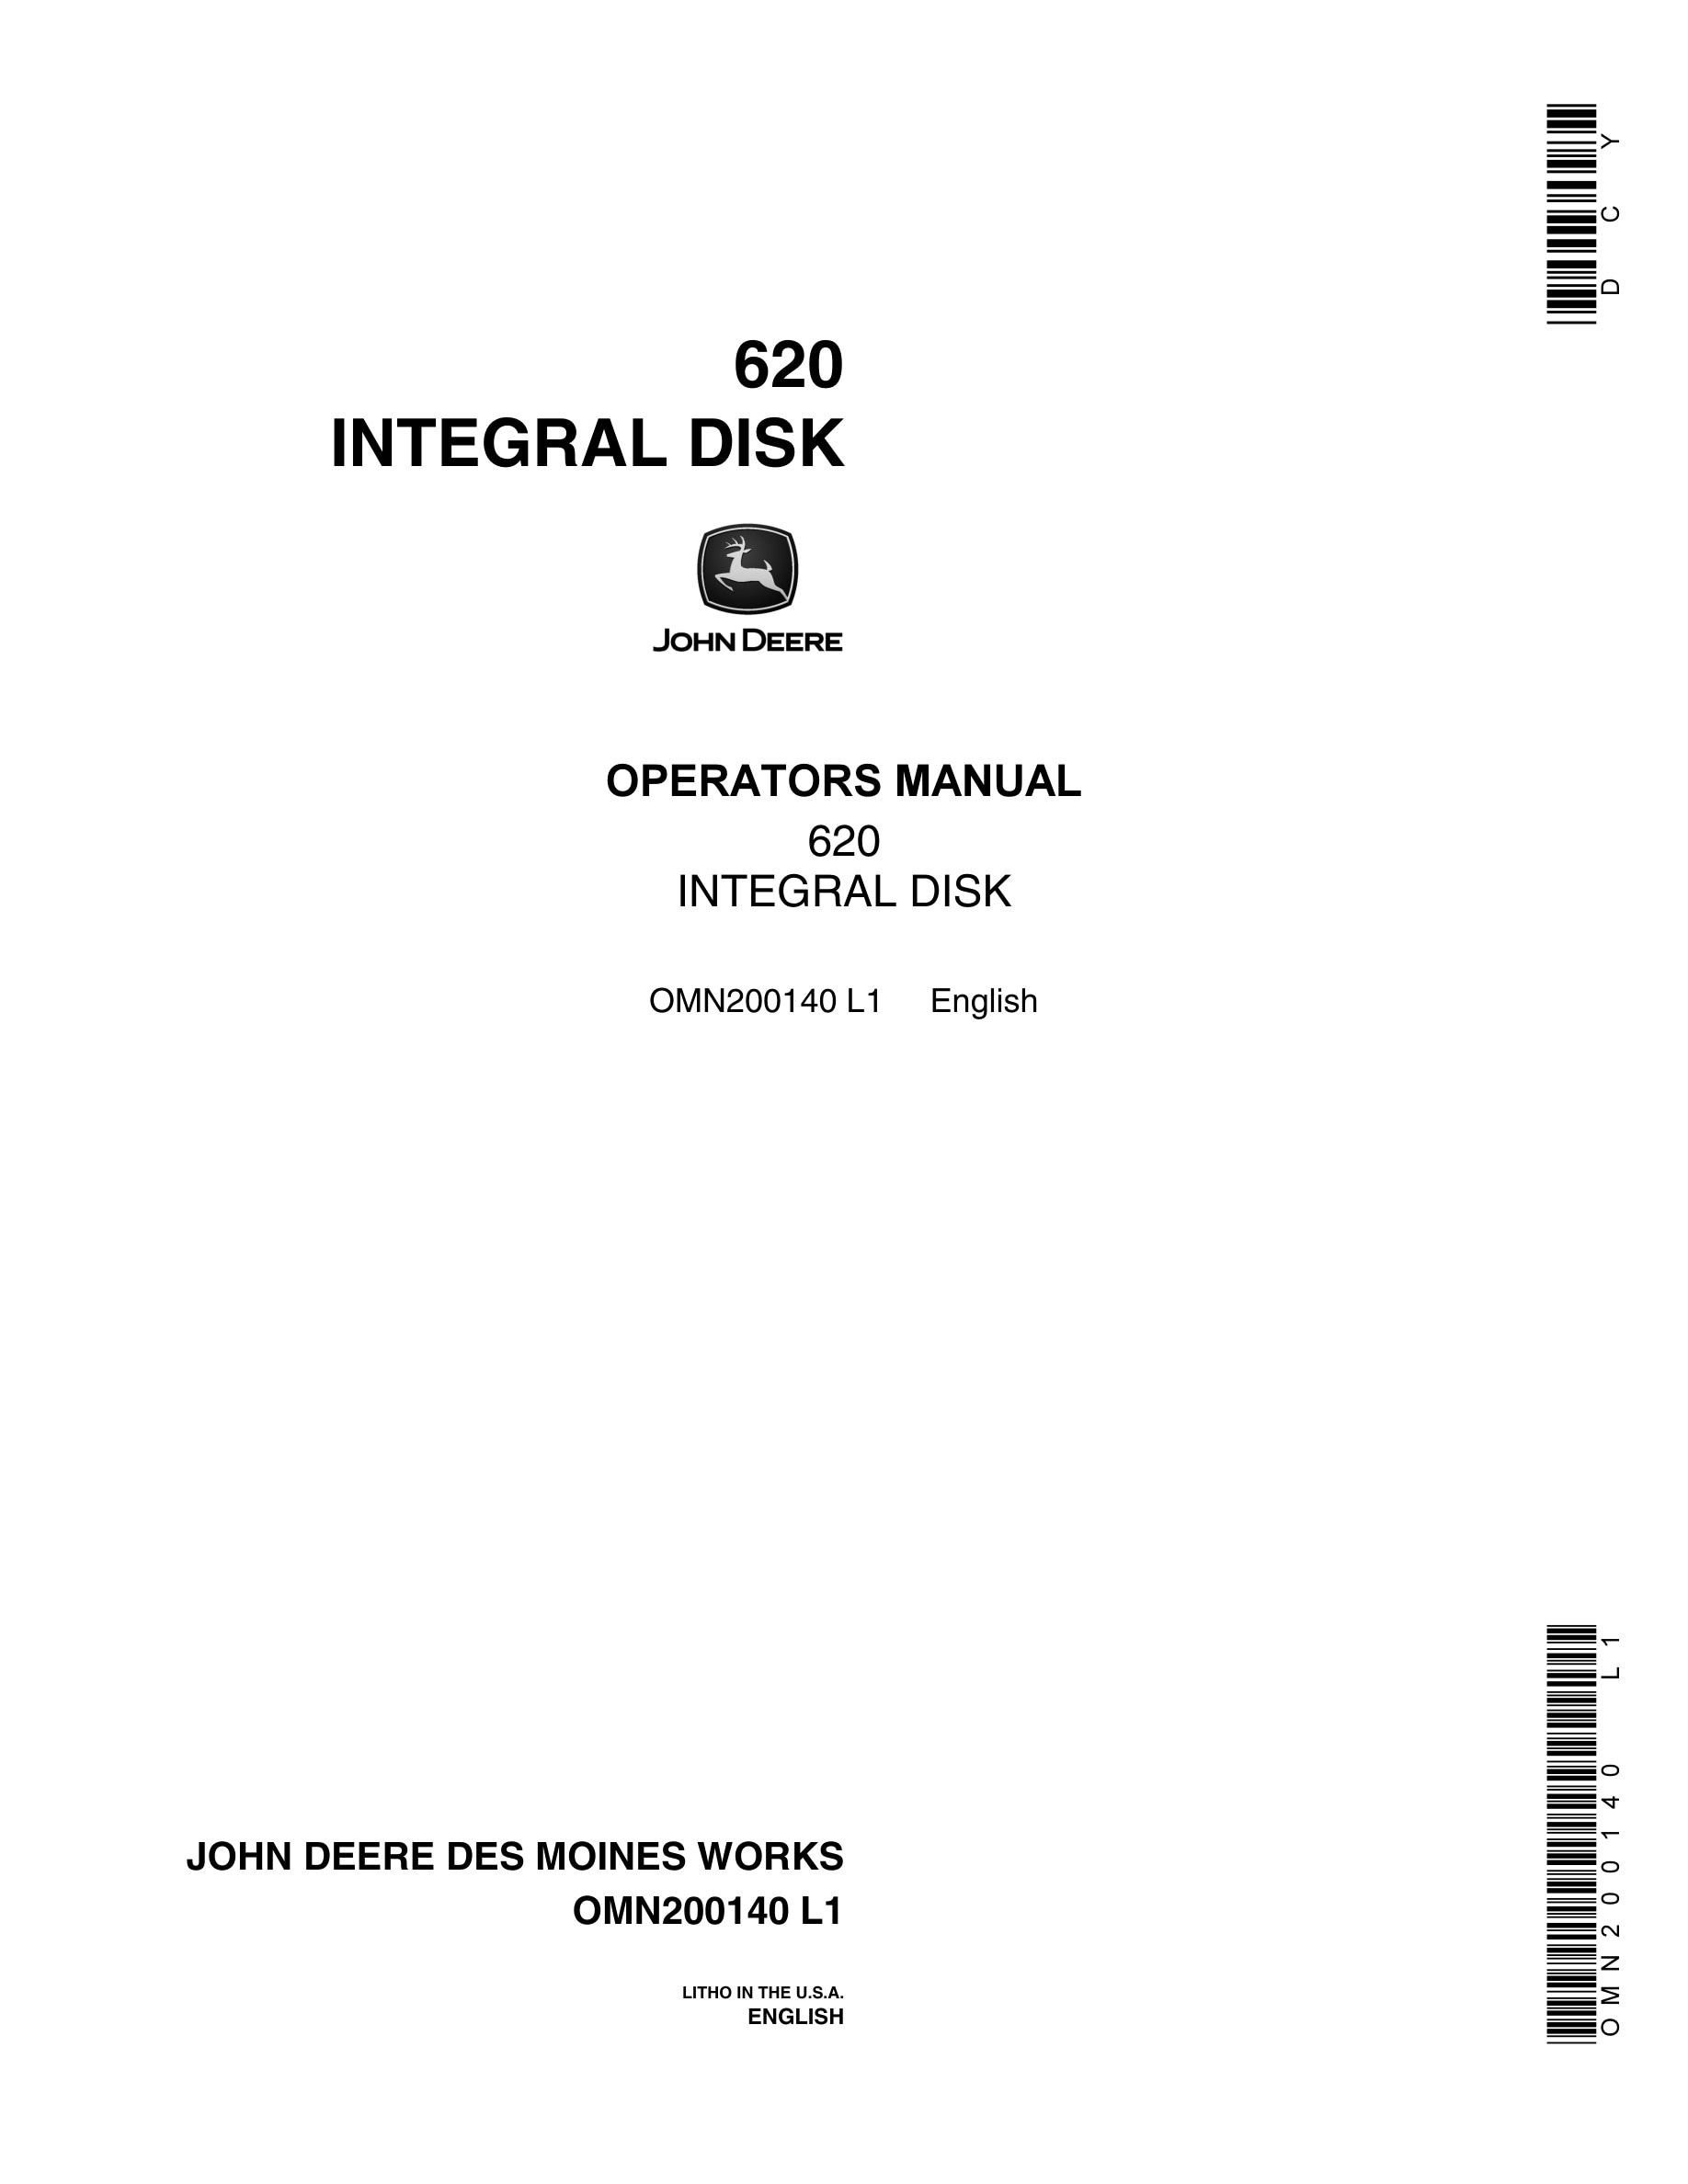 John Deere 620 INTEGRAL DISK Operator Manual OMN200140-1